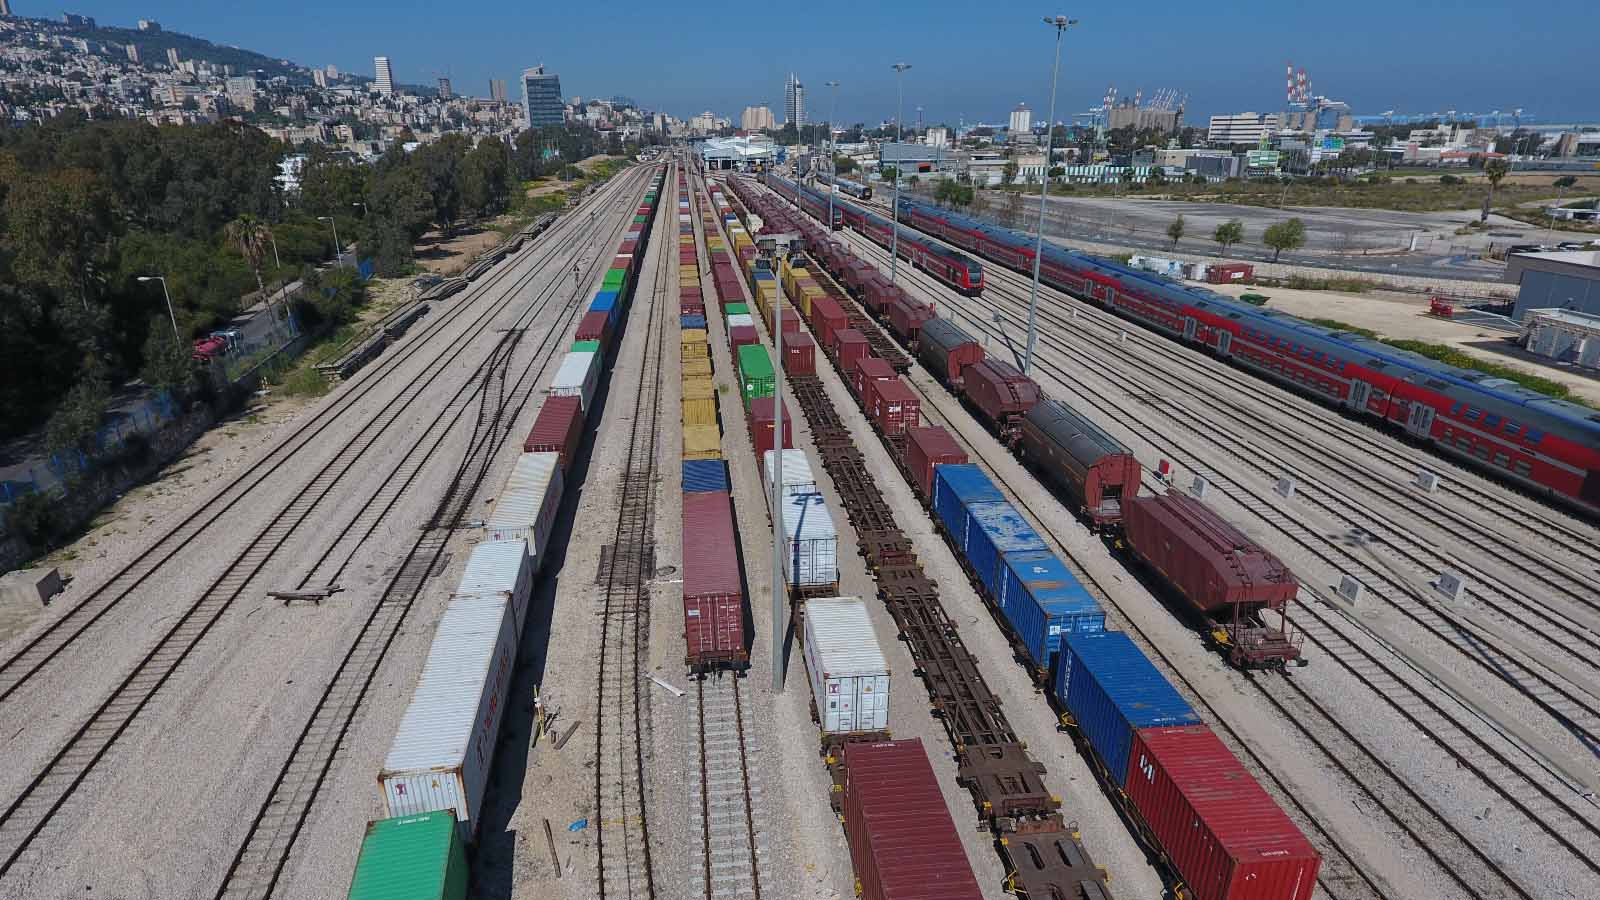 רכבות משא מועמסות שלא יכולות לנסוע בשל סכסוכי העבודה ברכבת ישראל. (צילום: מוטי ניאגו)